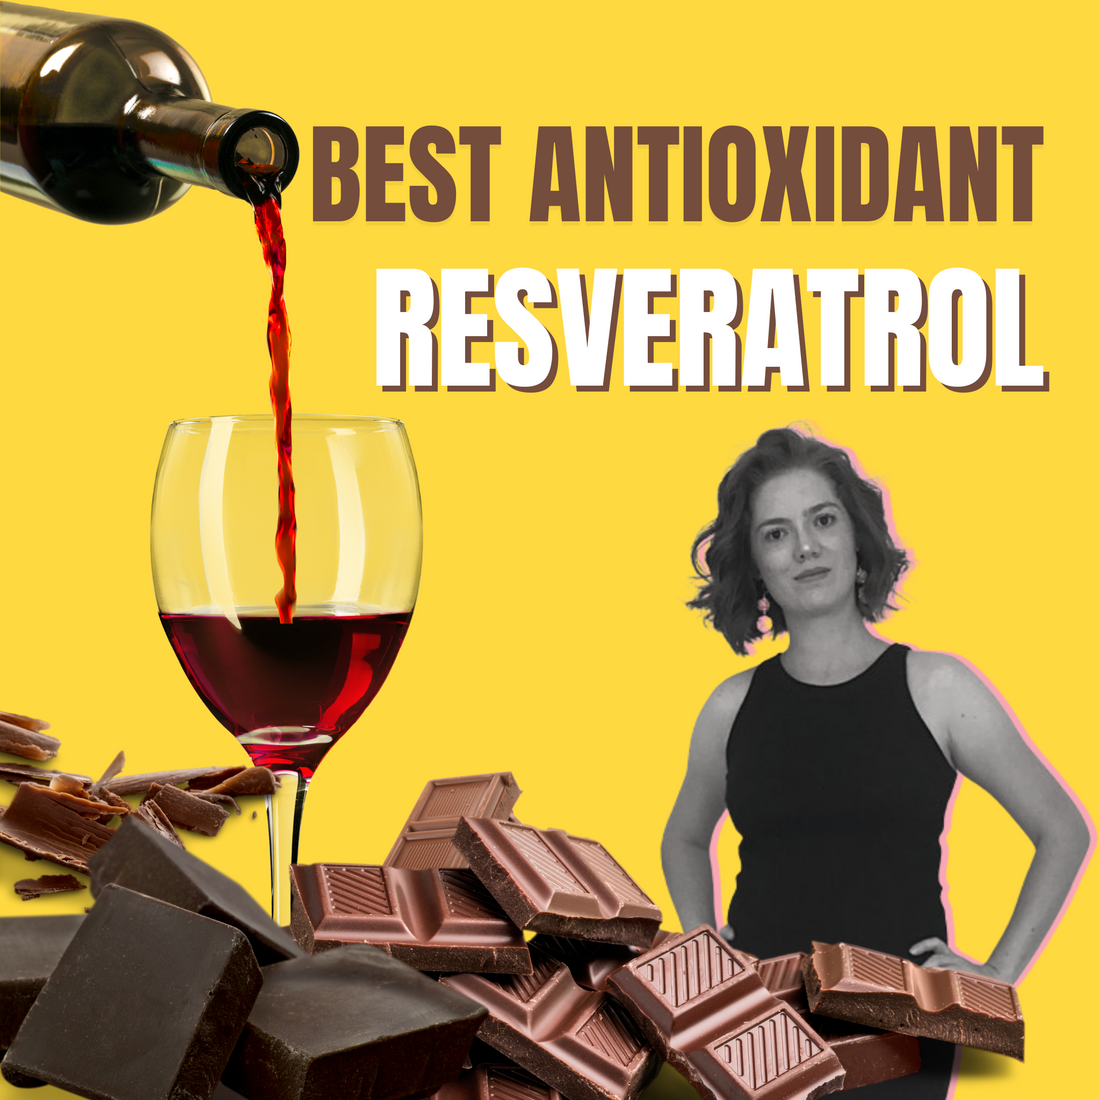 Best antioxidant for your skin | Resveratrol